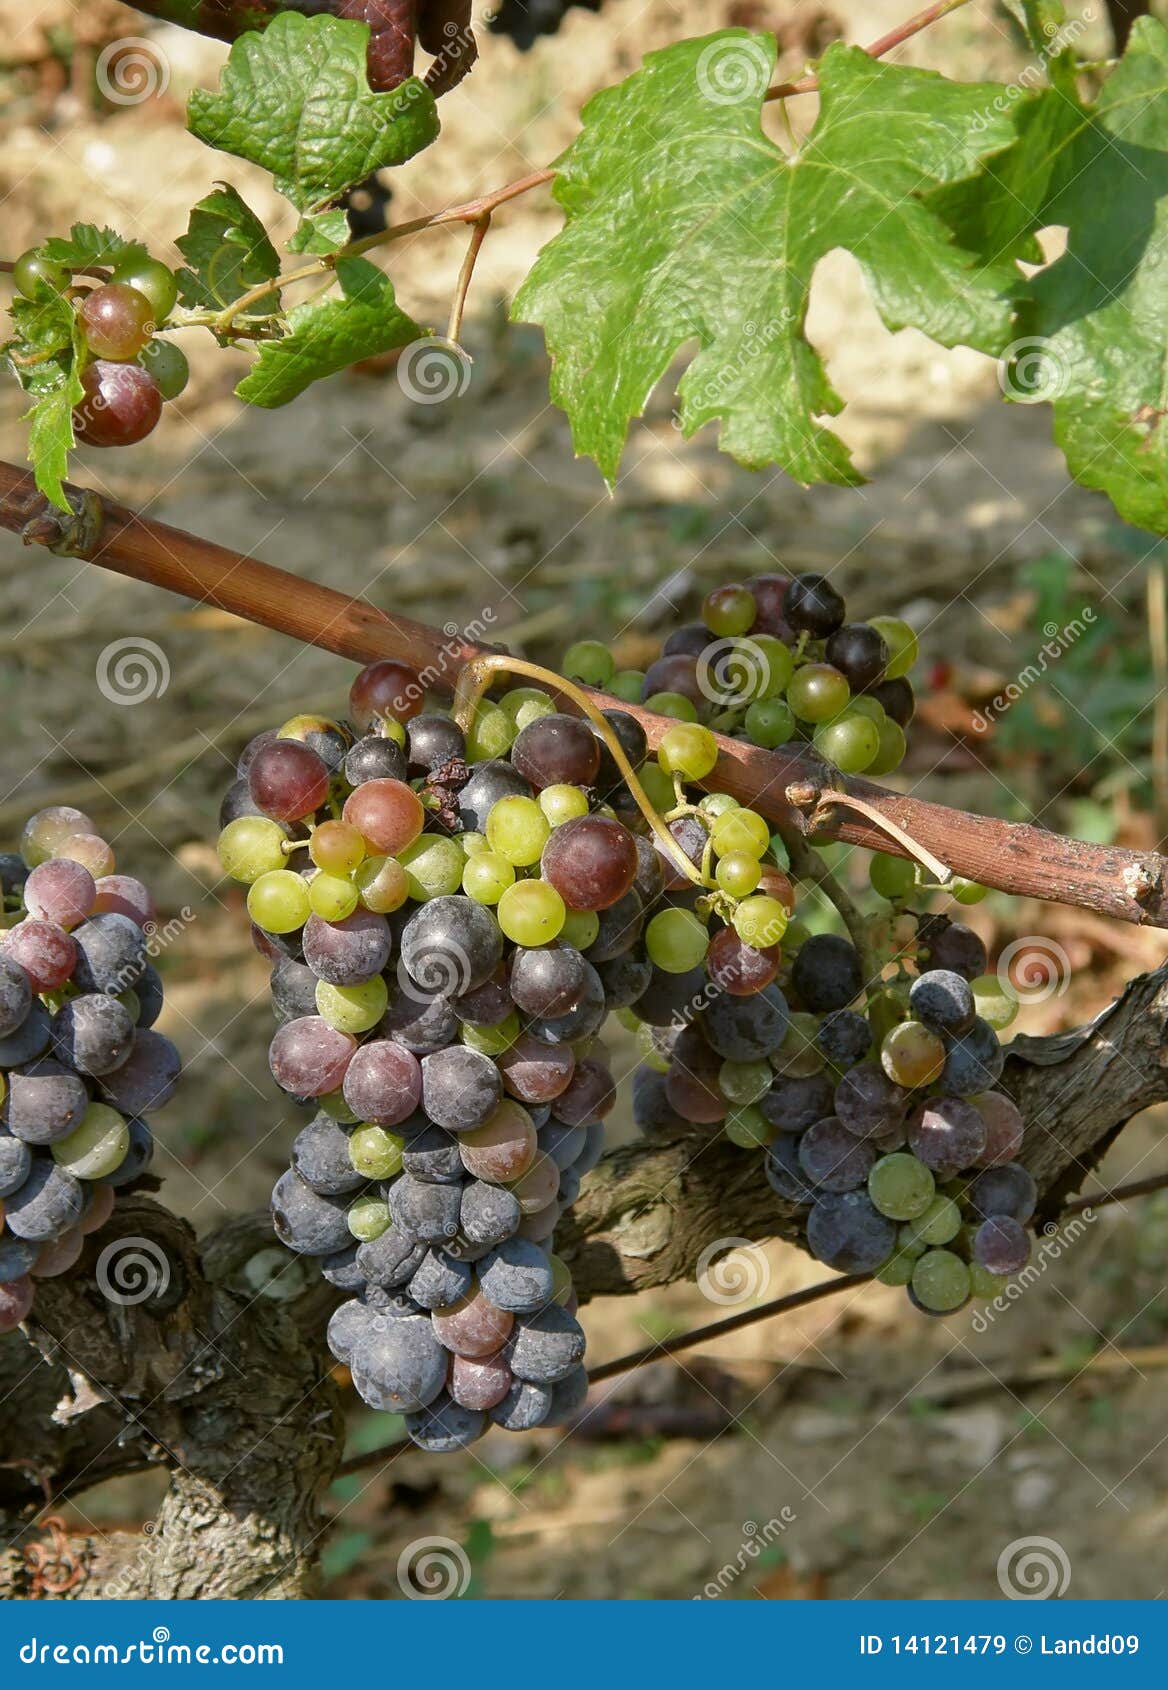 unripe grapes